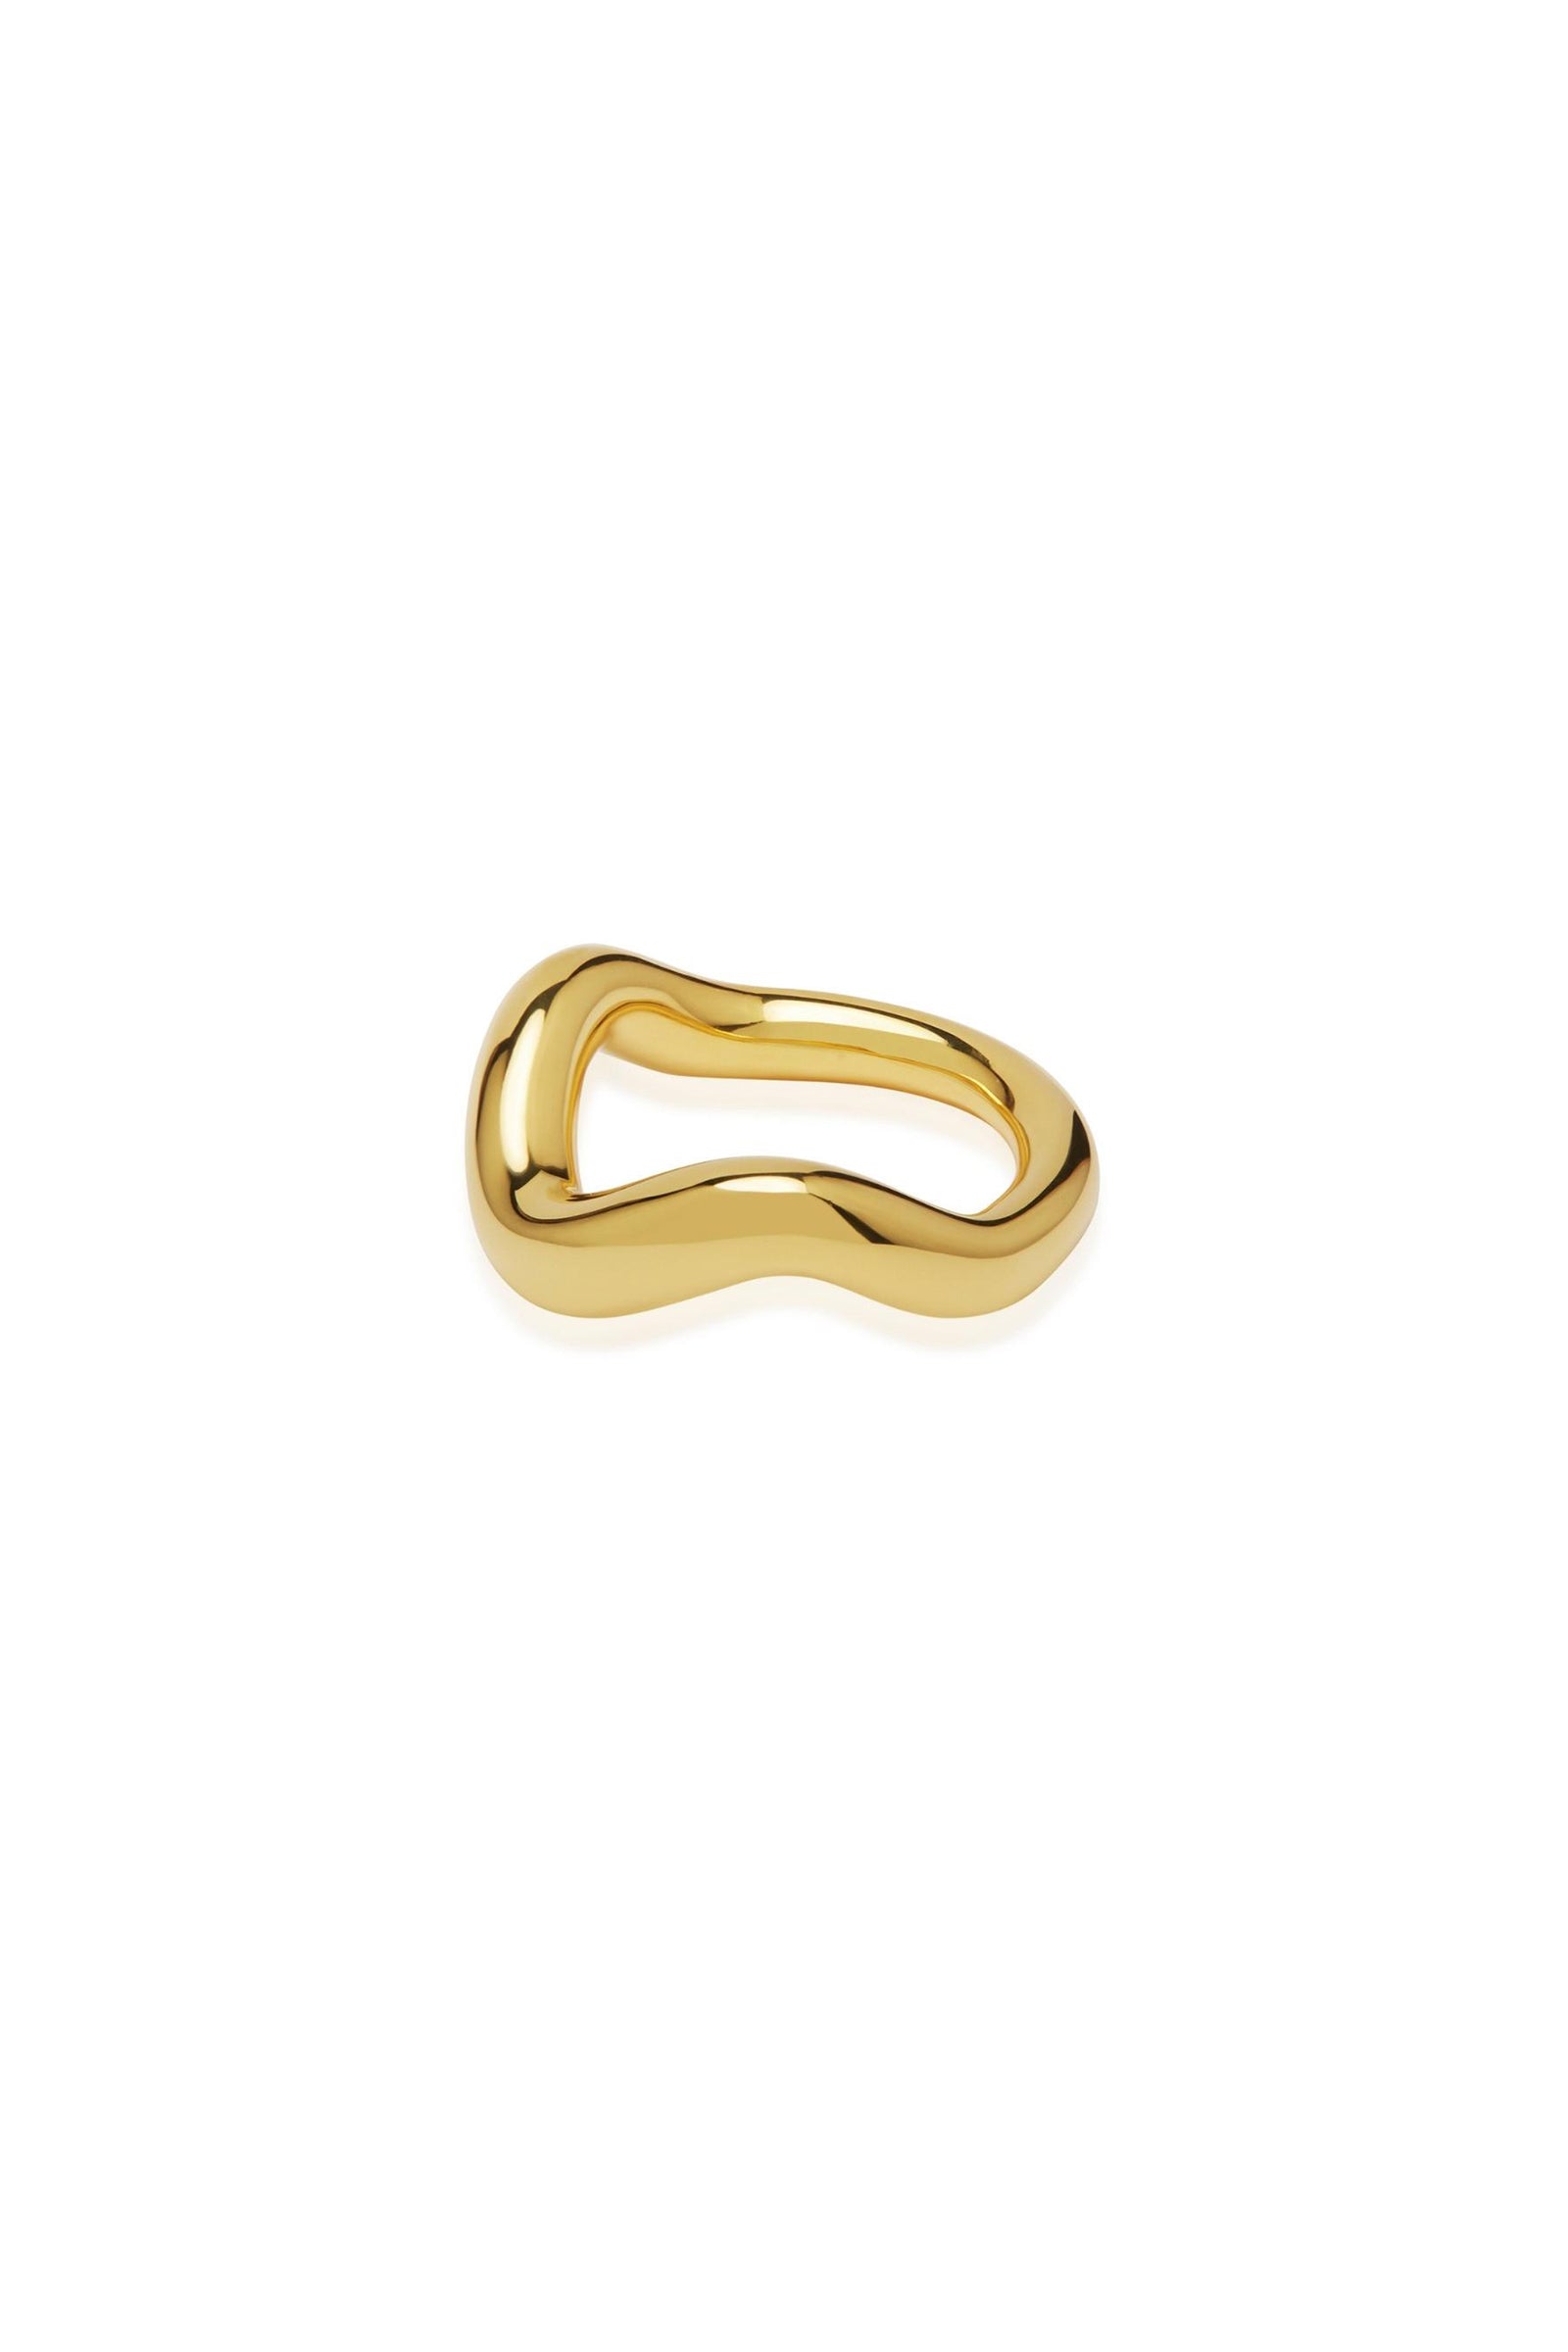 Nude Lucy Wabi Sabi Ring In Gold 